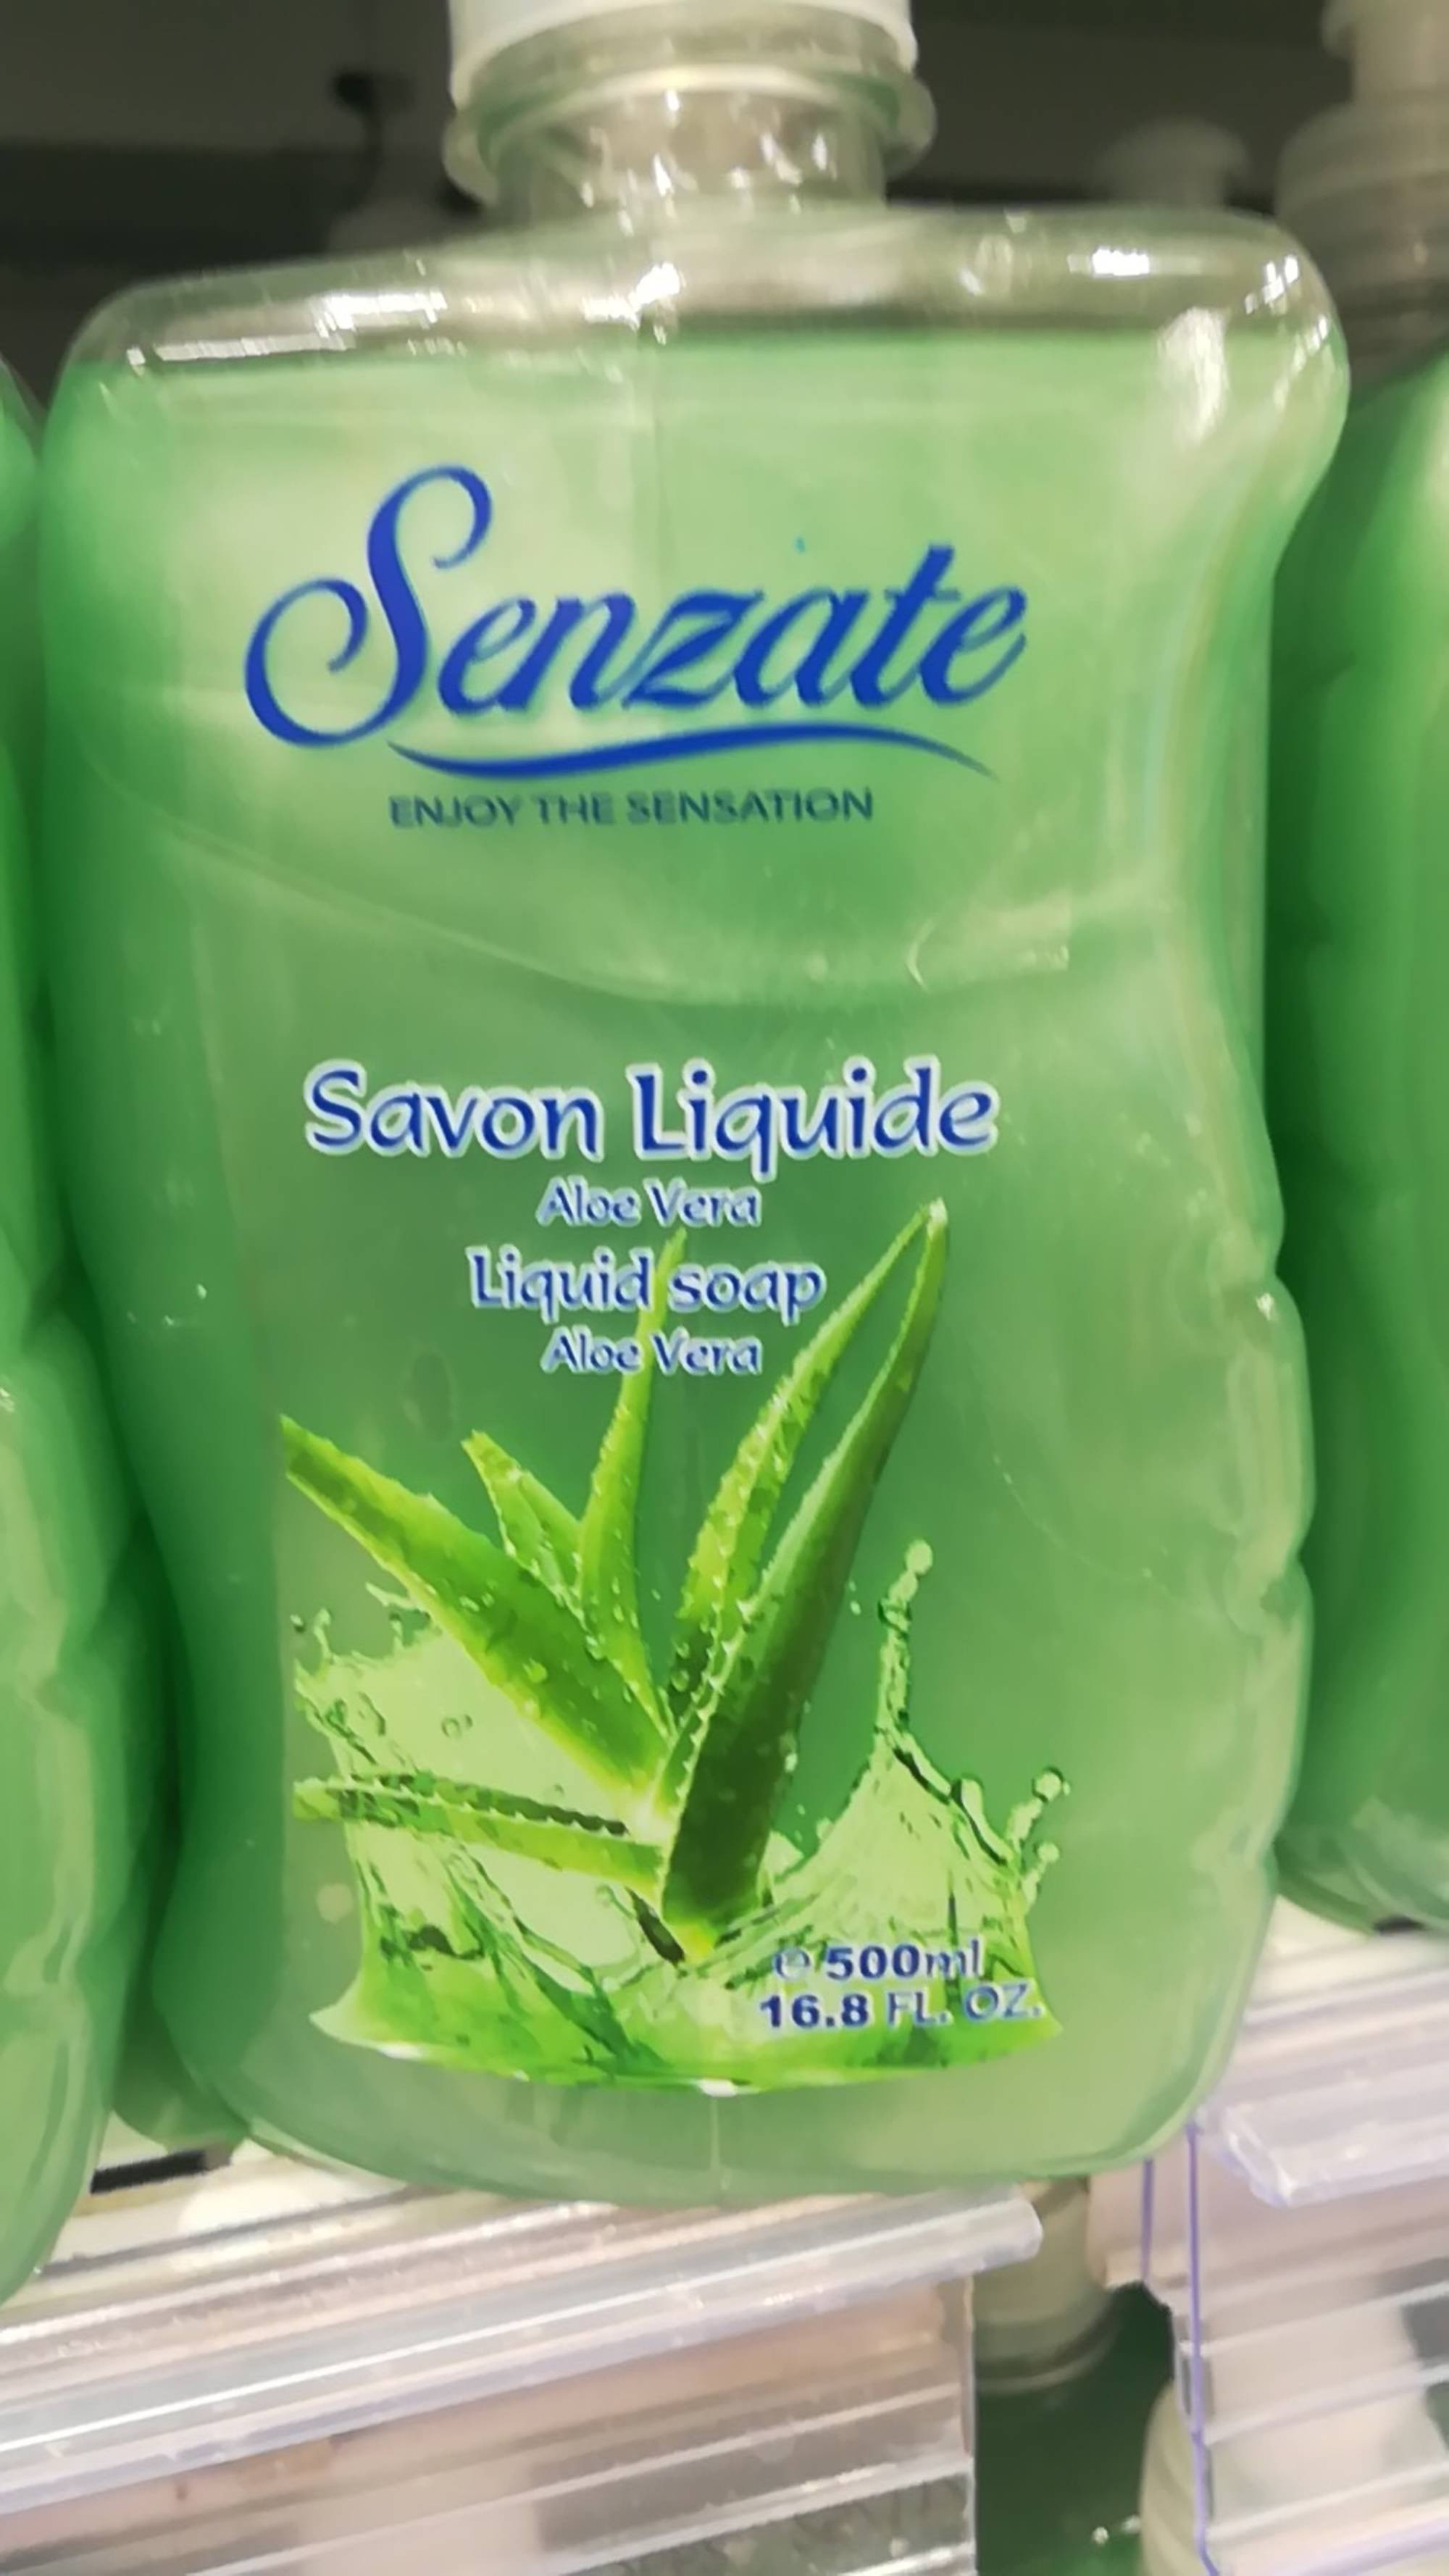 SENZATE - Savon liquide Aloe Vera